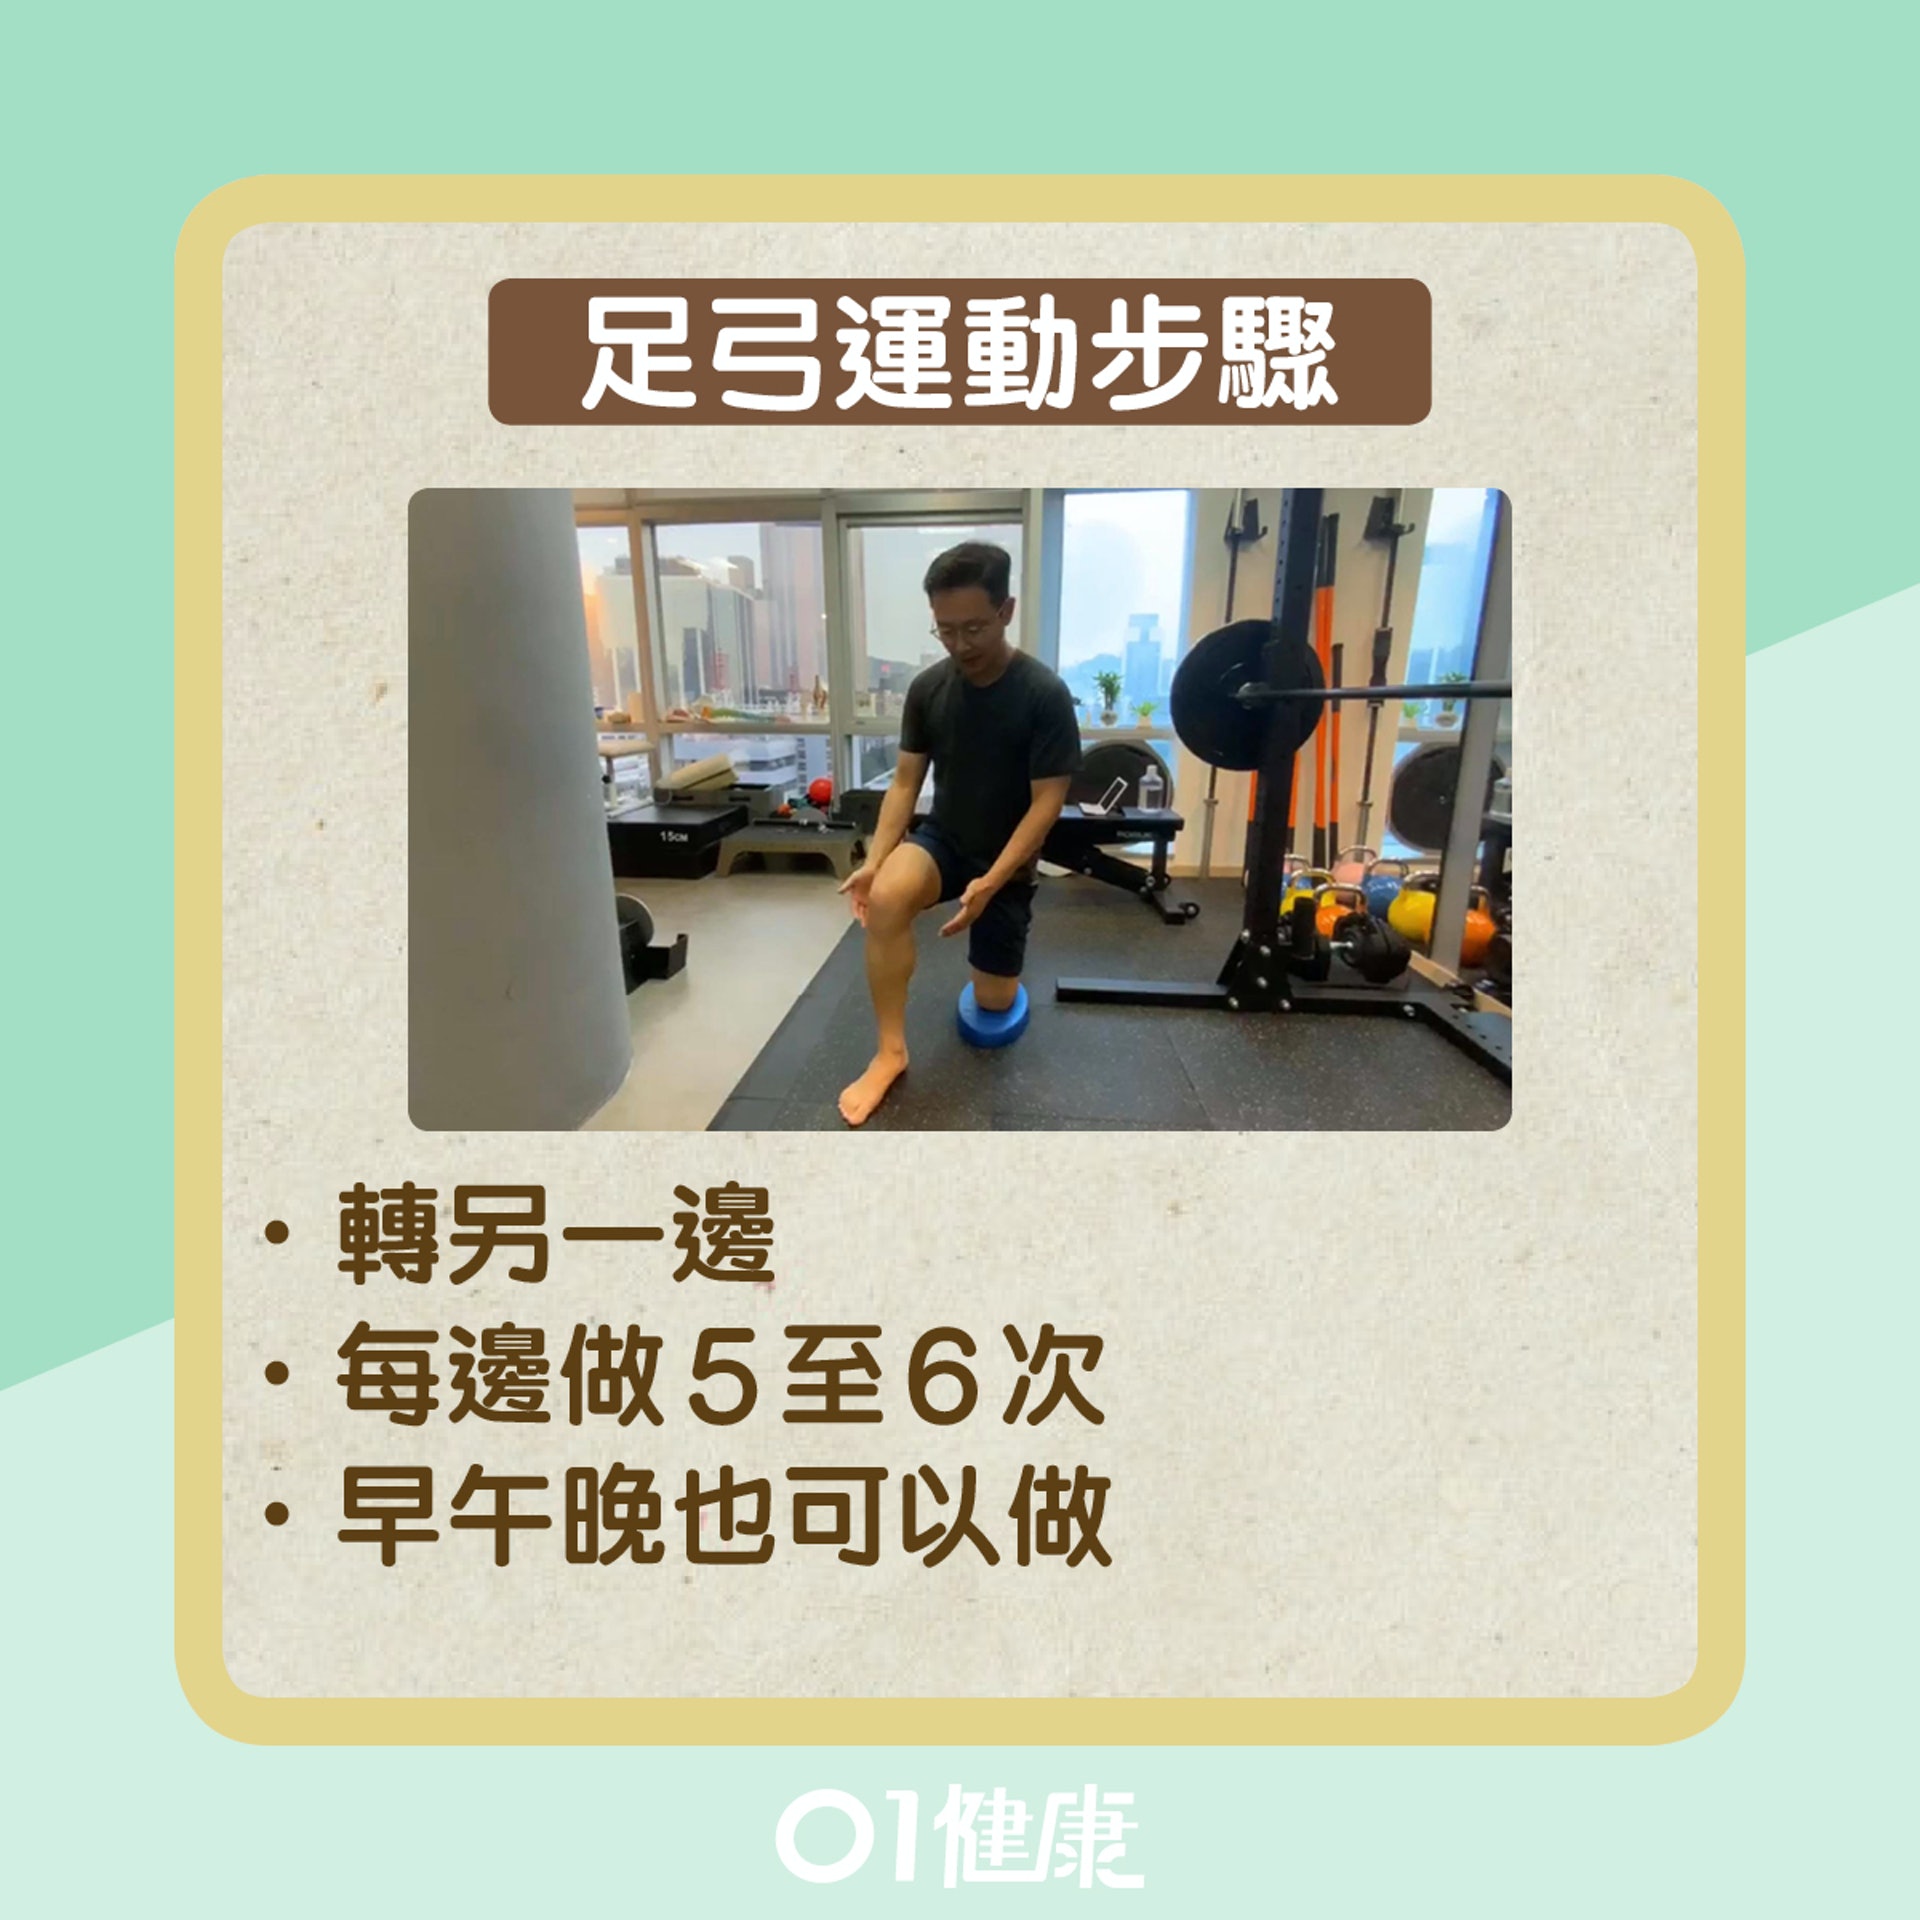 足弓運動步驟（01健康）